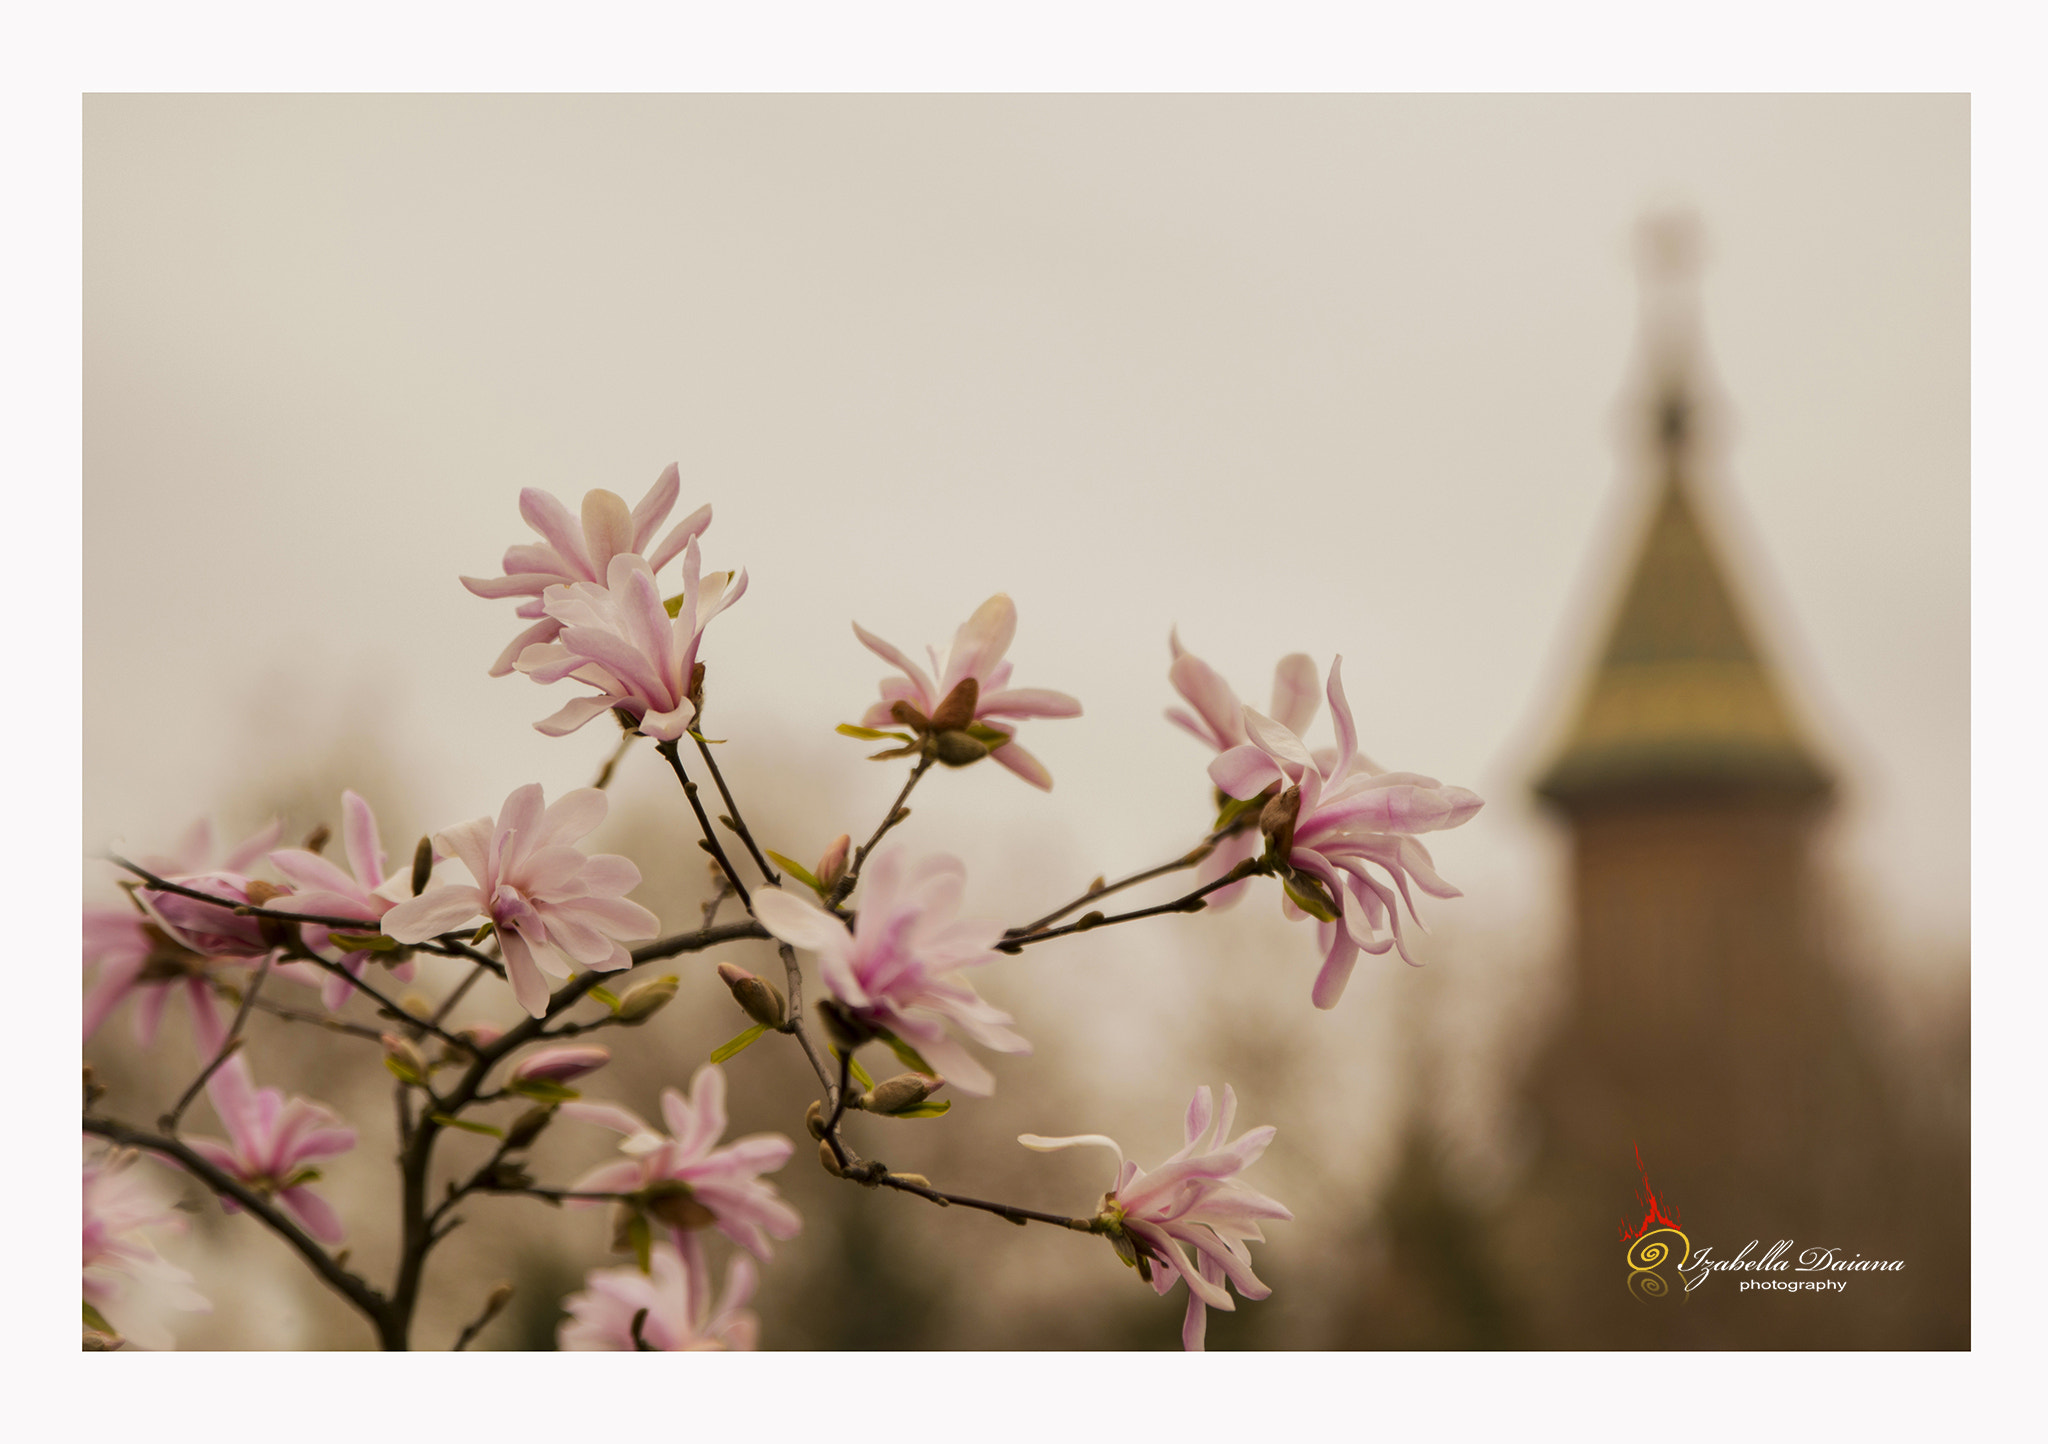 Nikon D7100 sample photo. Beautiful spring photography